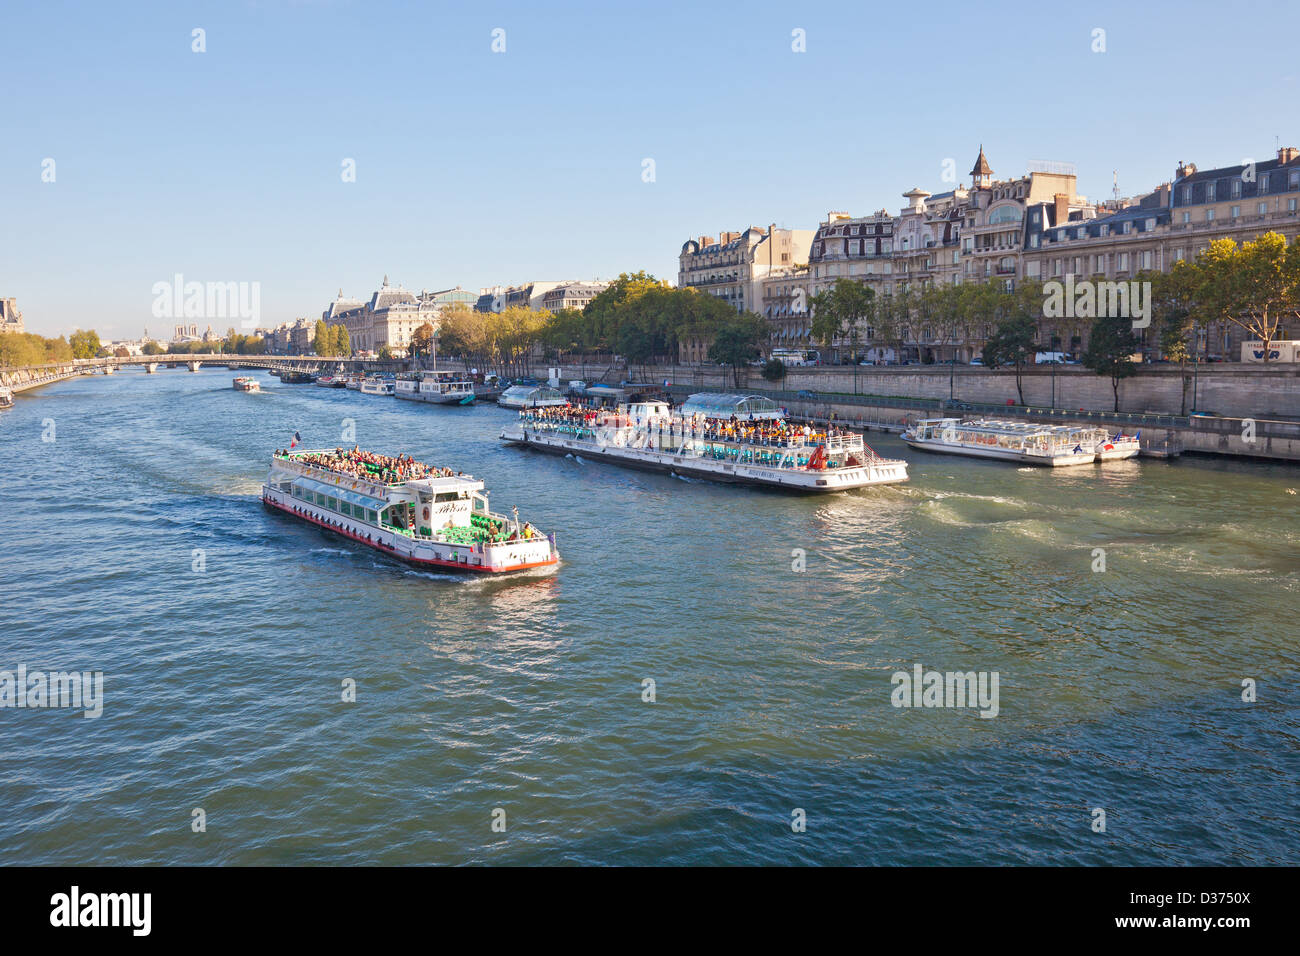 Deux touristes sur les Bateaux Mouches bateaux touristiques et vedettes de pont neuf sur la Seine au centre de Paris. Banque D'Images